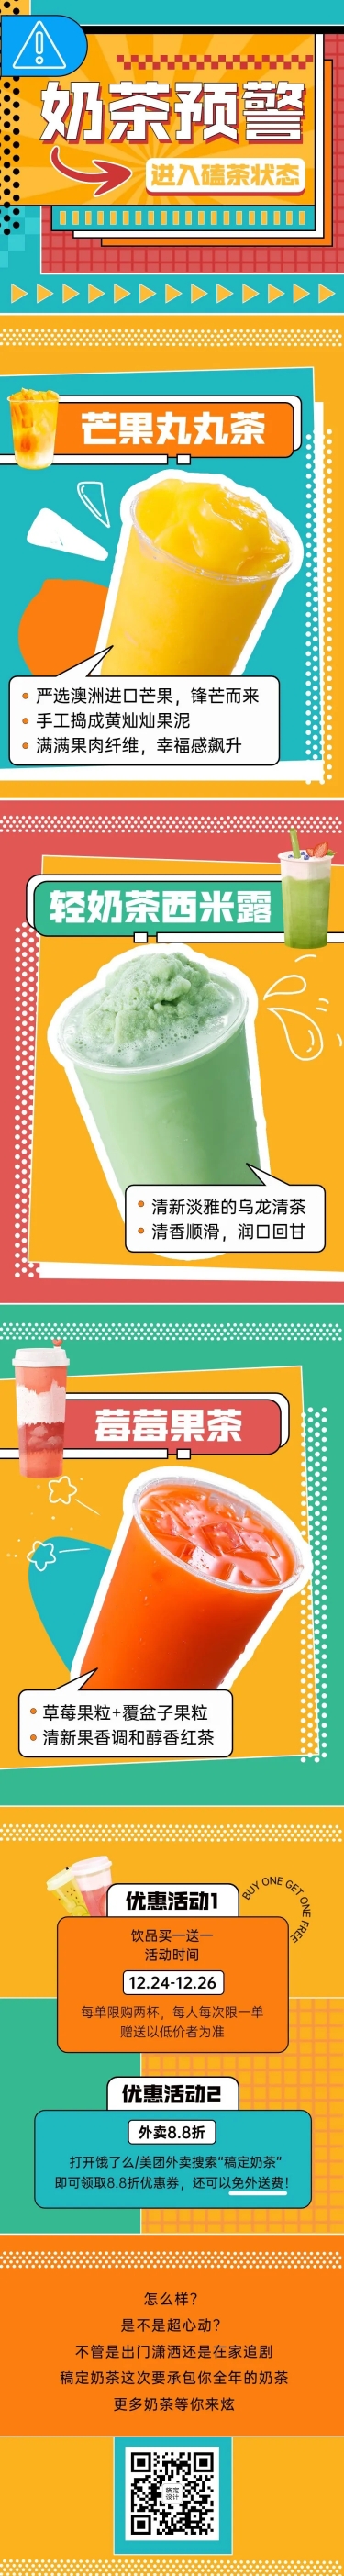 餐饮奶茶饮品社交媒体营销文章长图